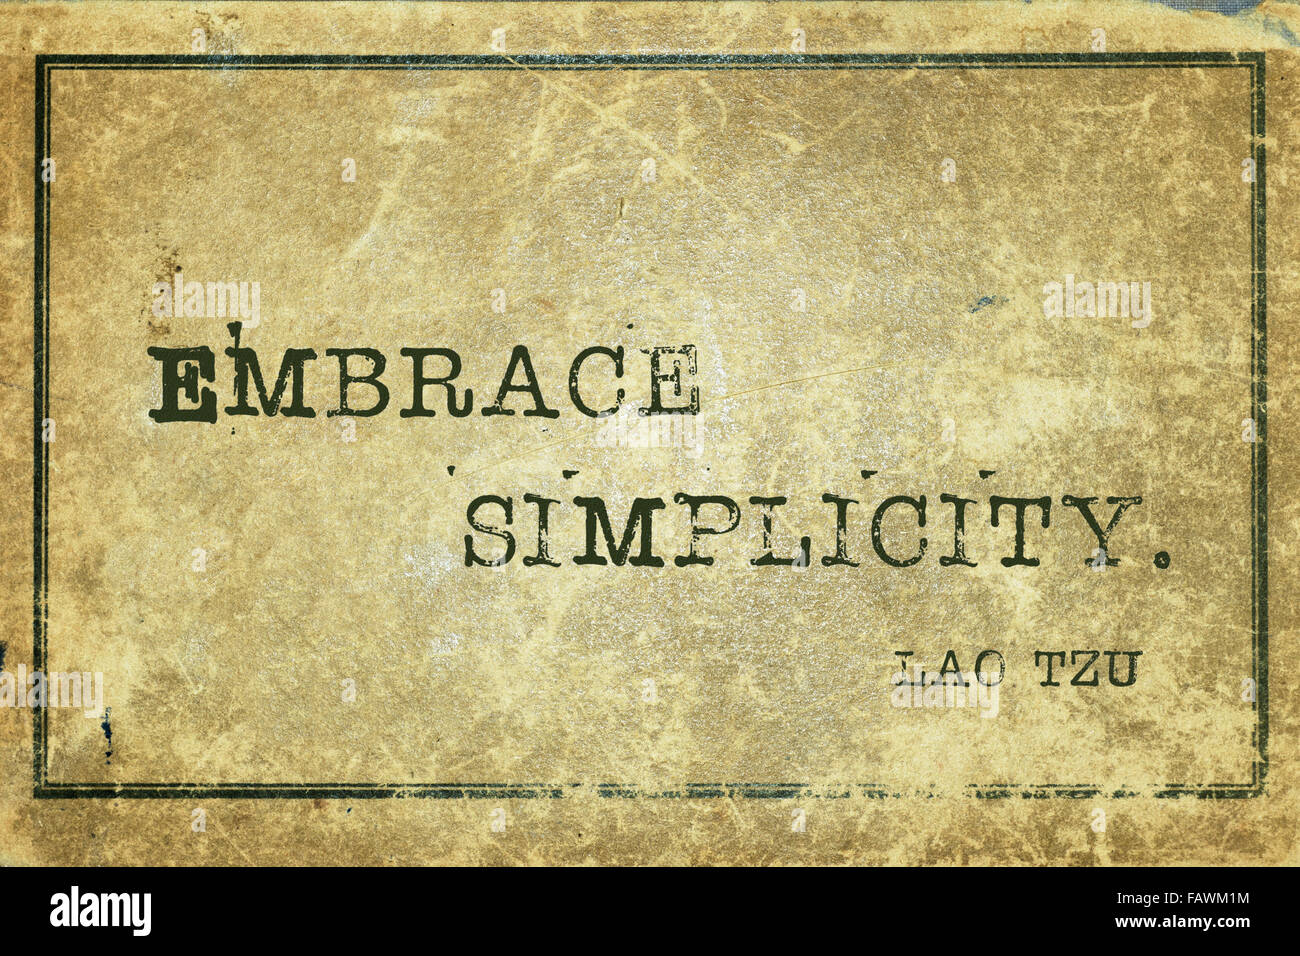 Abbracciare la semplicità - antico filosofo cinese Lao Tzu preventivo stampato su grunge cartone vintage Foto Stock